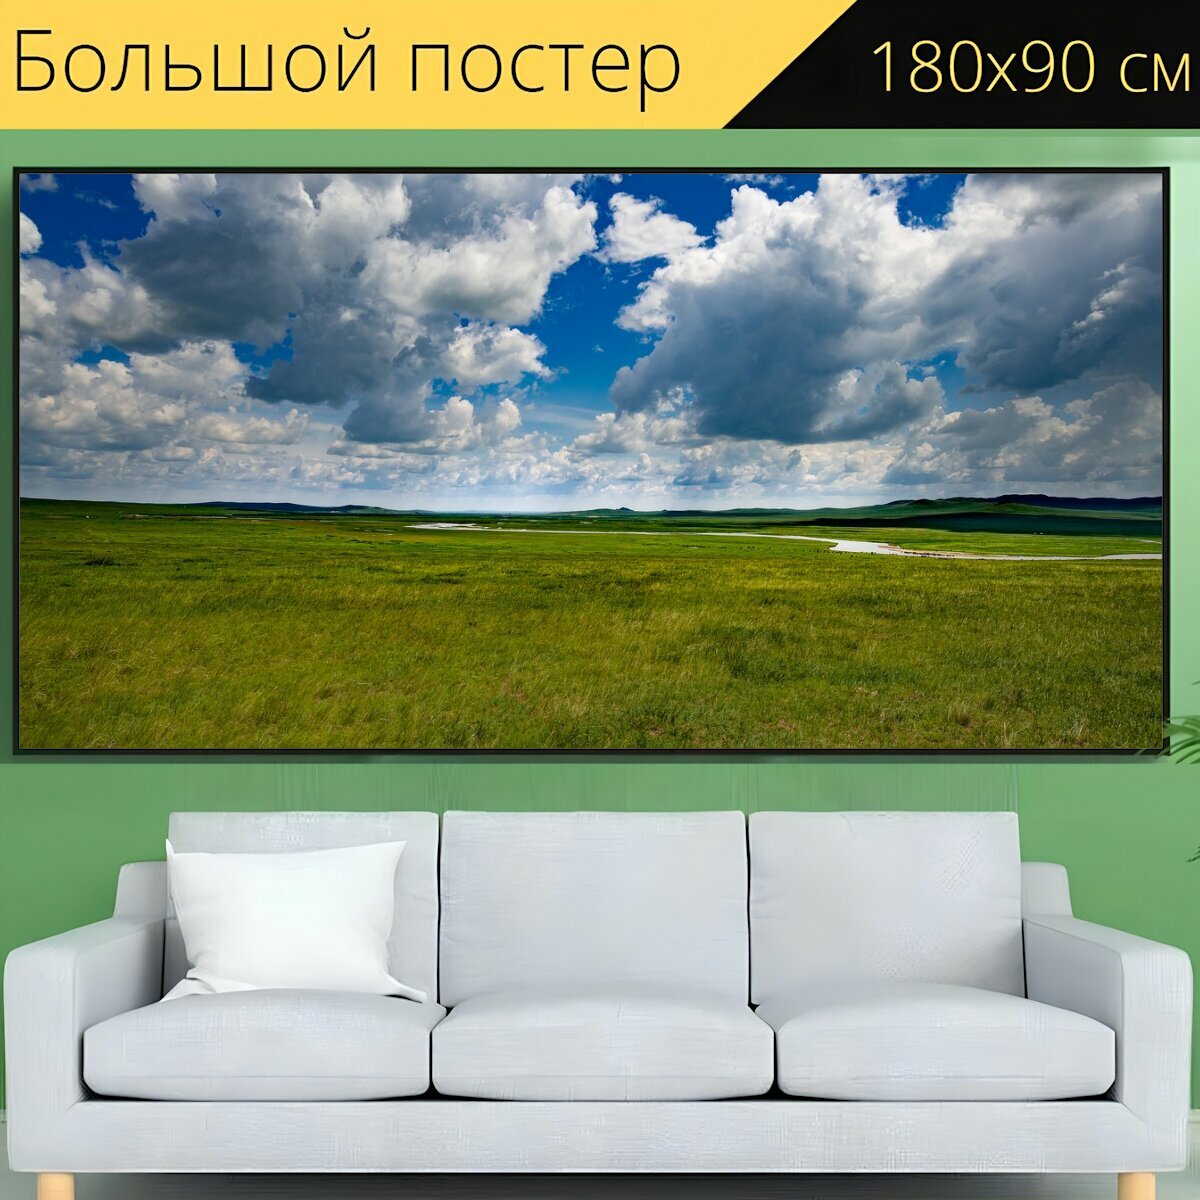 Большой постер "Пейзаж, луг, небо" 180 x 90 см. для интерьера